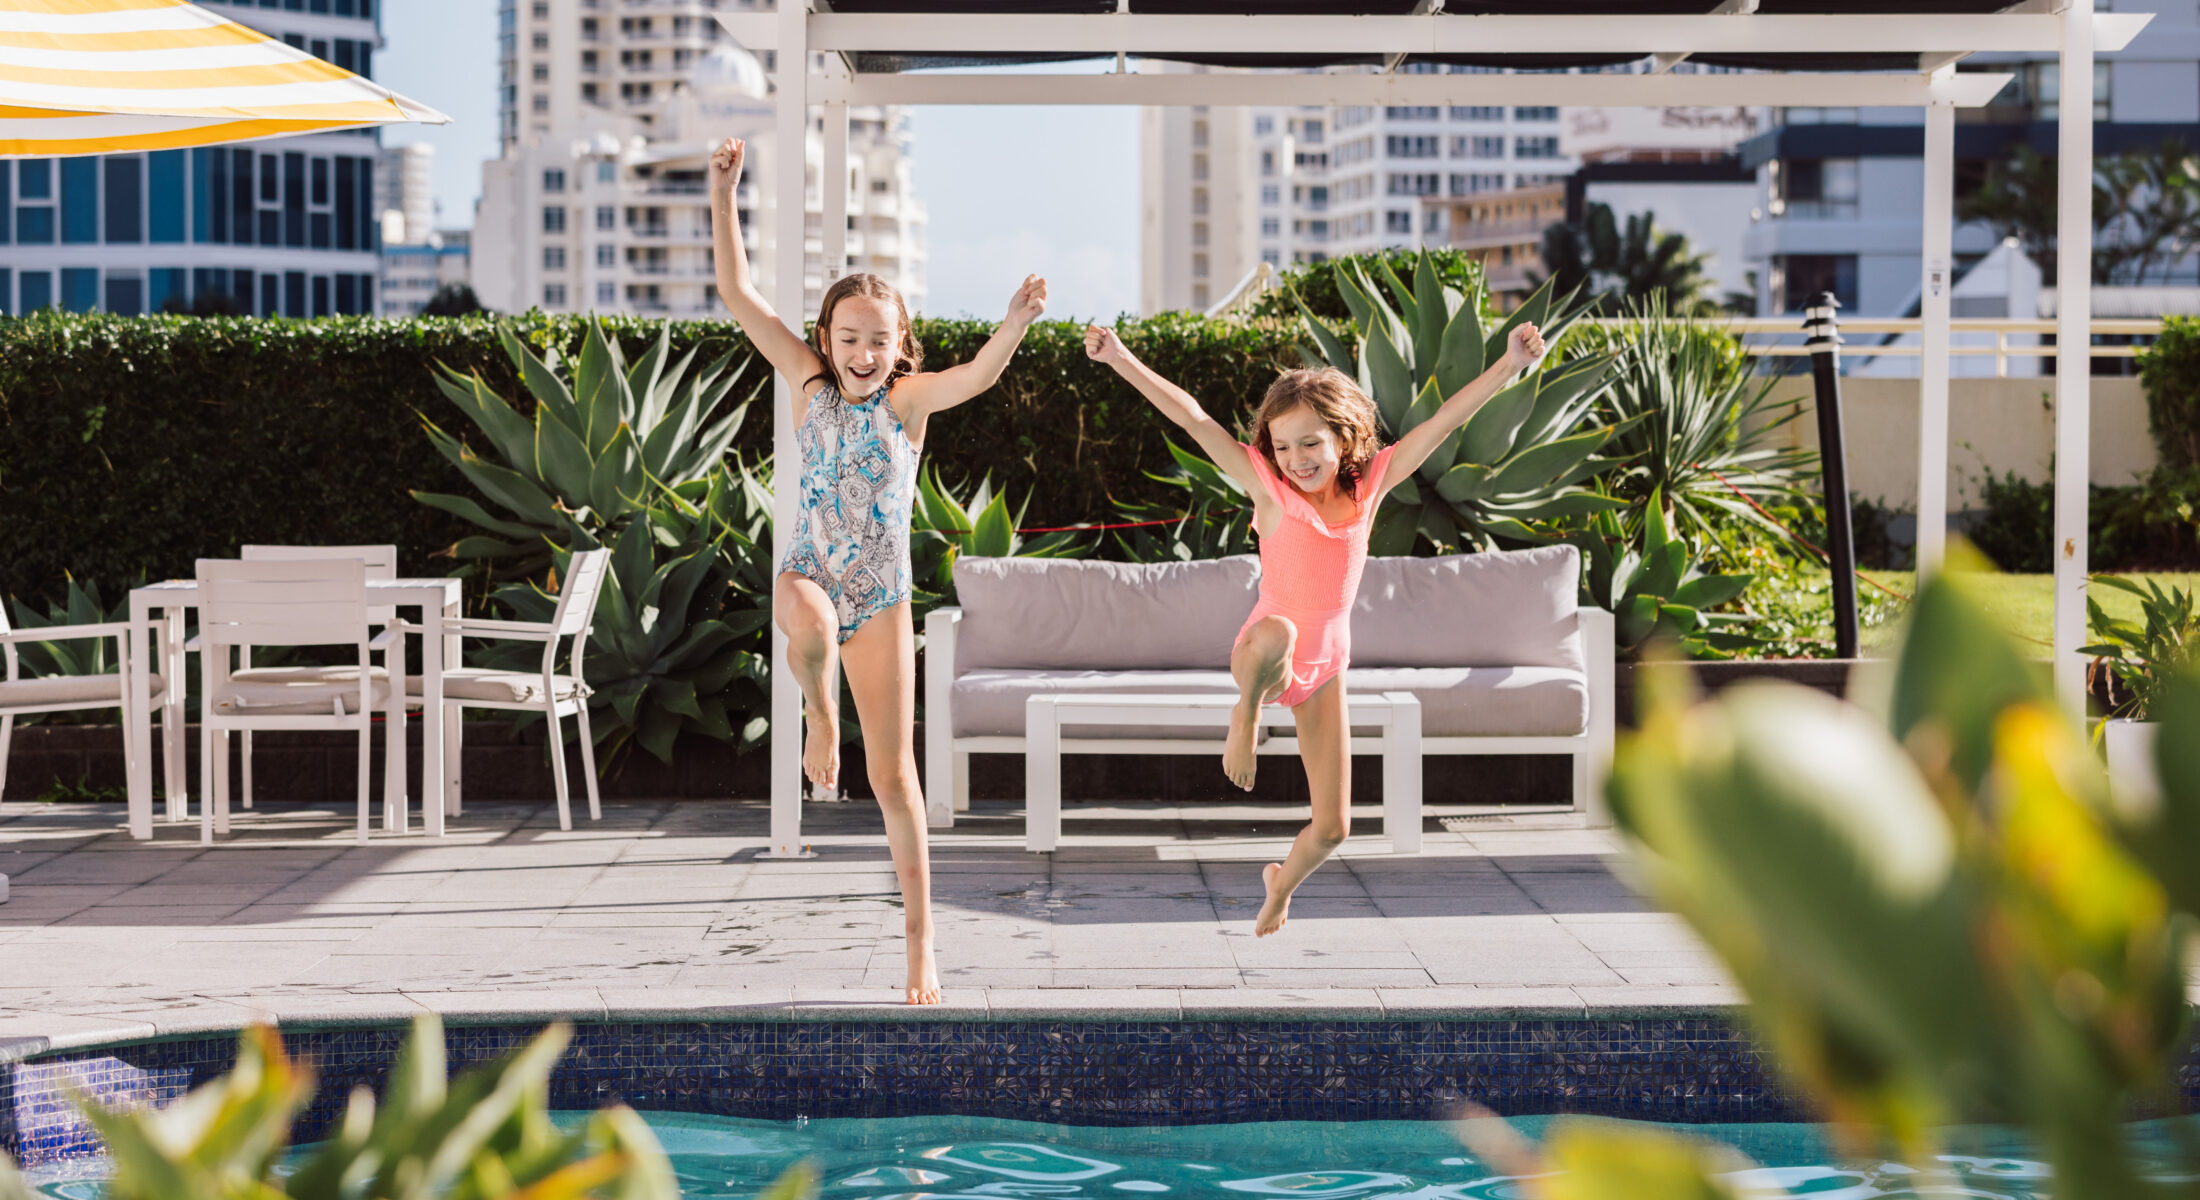 Gold Coast Accommodation | Surfers Paradise Hotel | Gold Coast Hotel